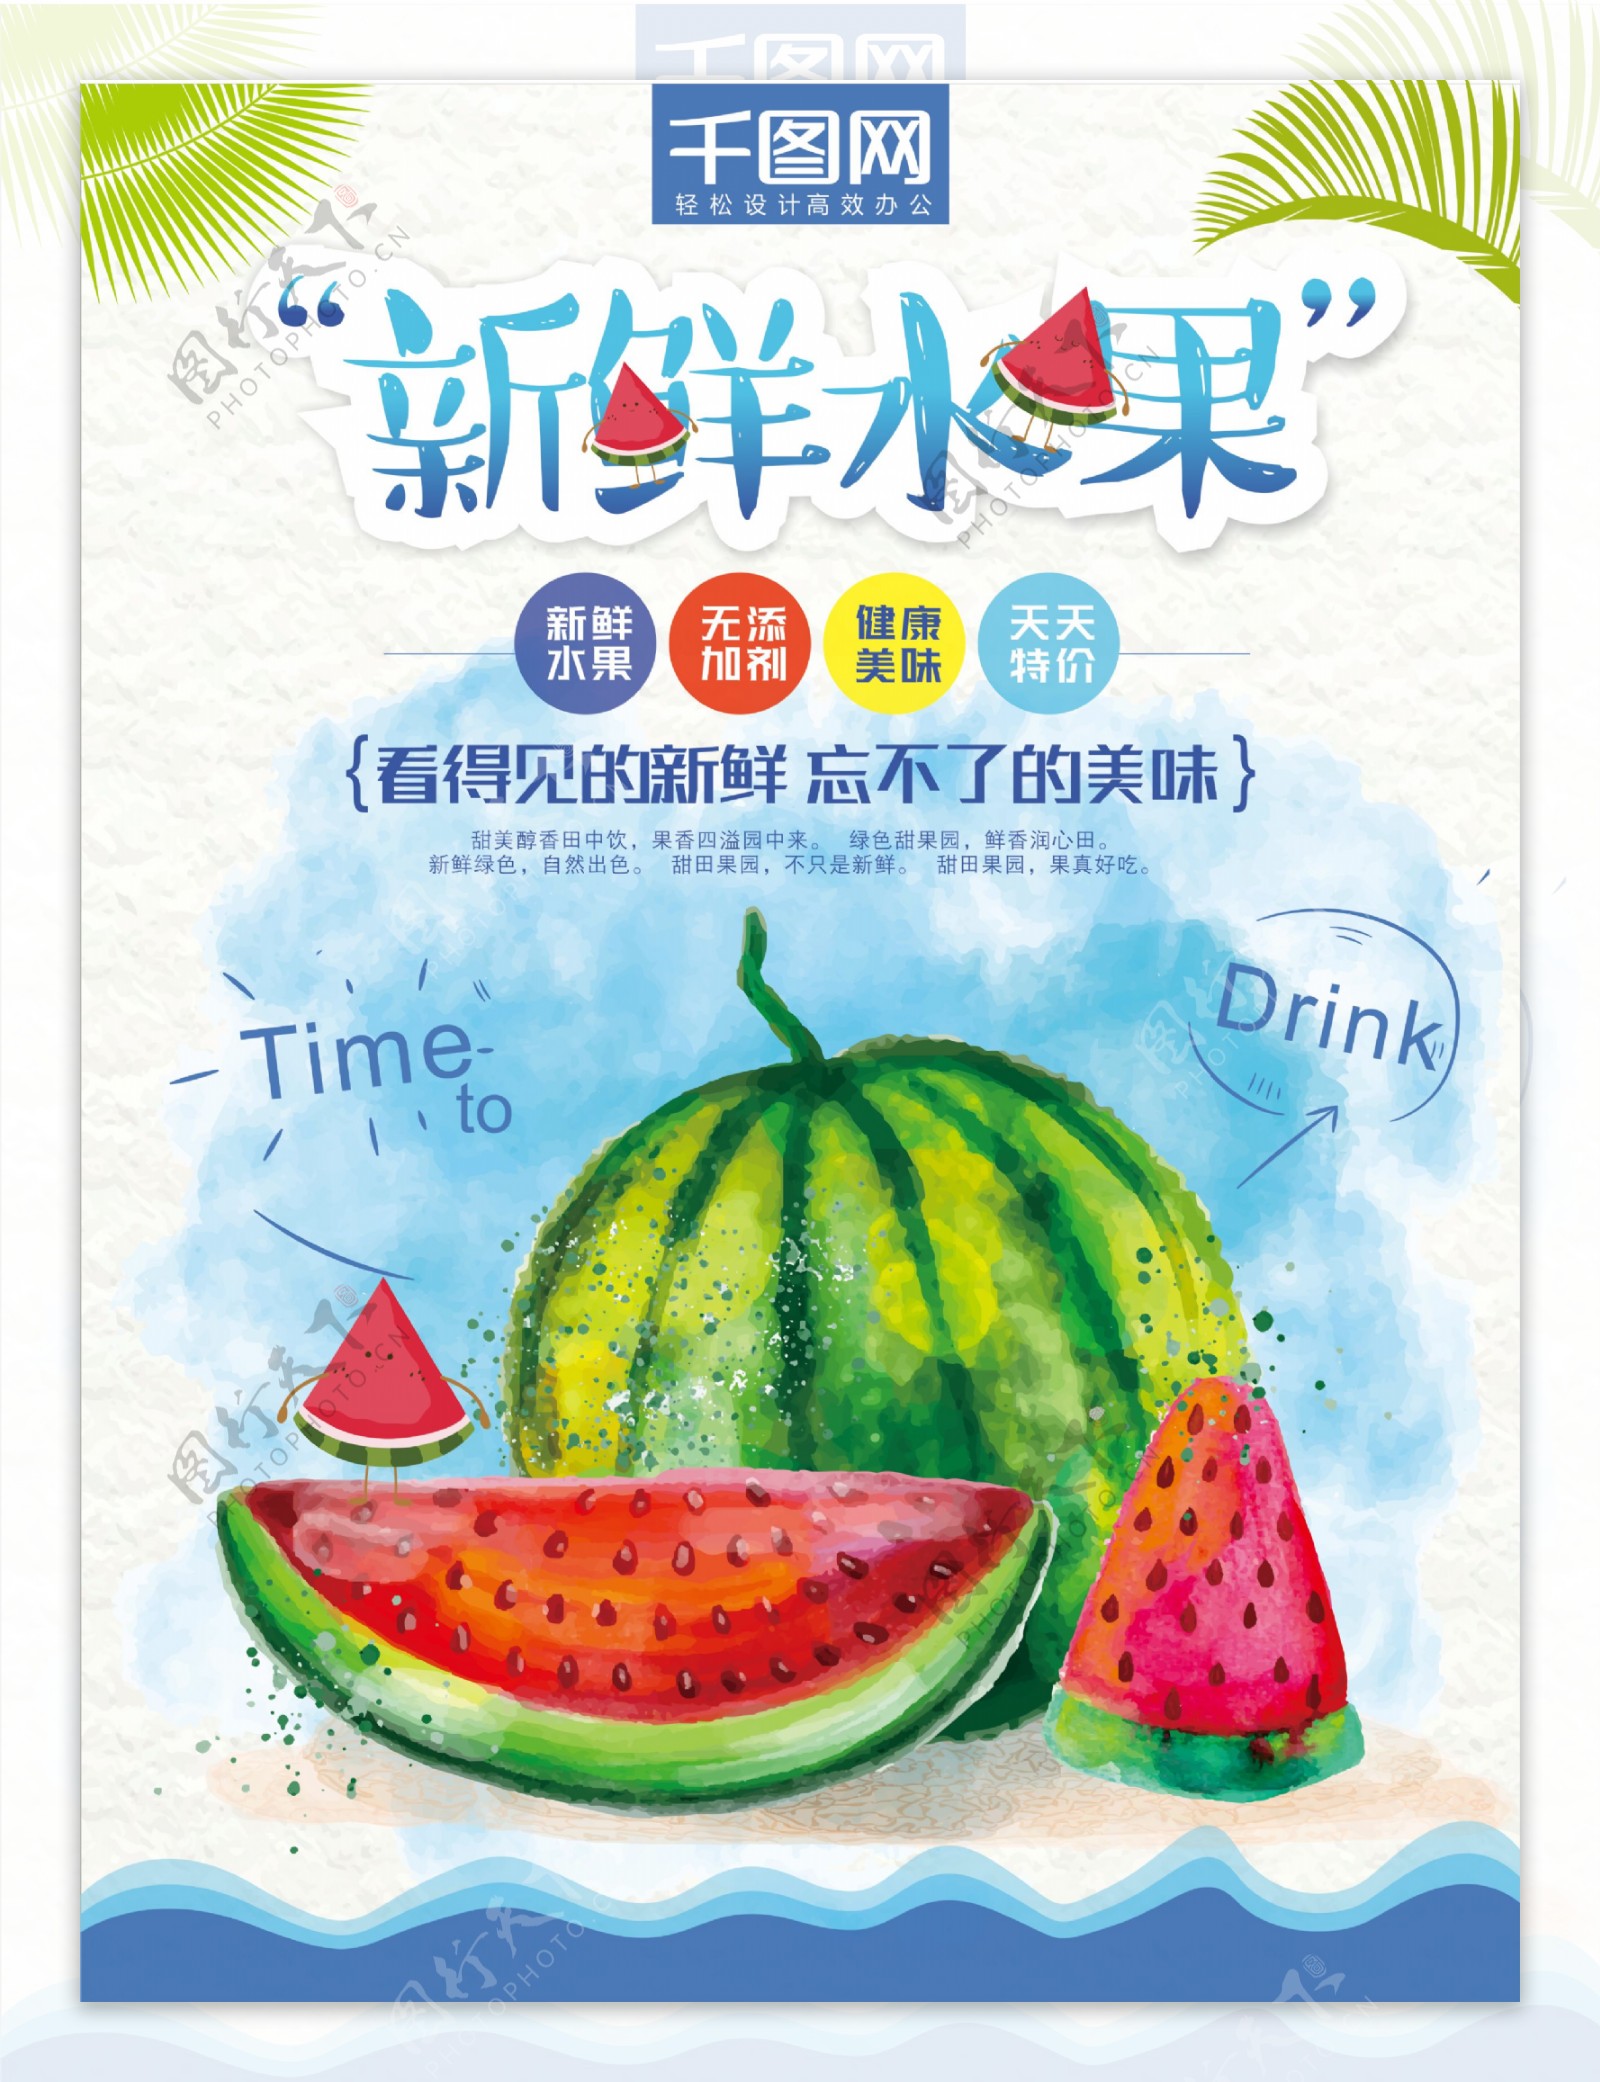 千图西瓜水果海报